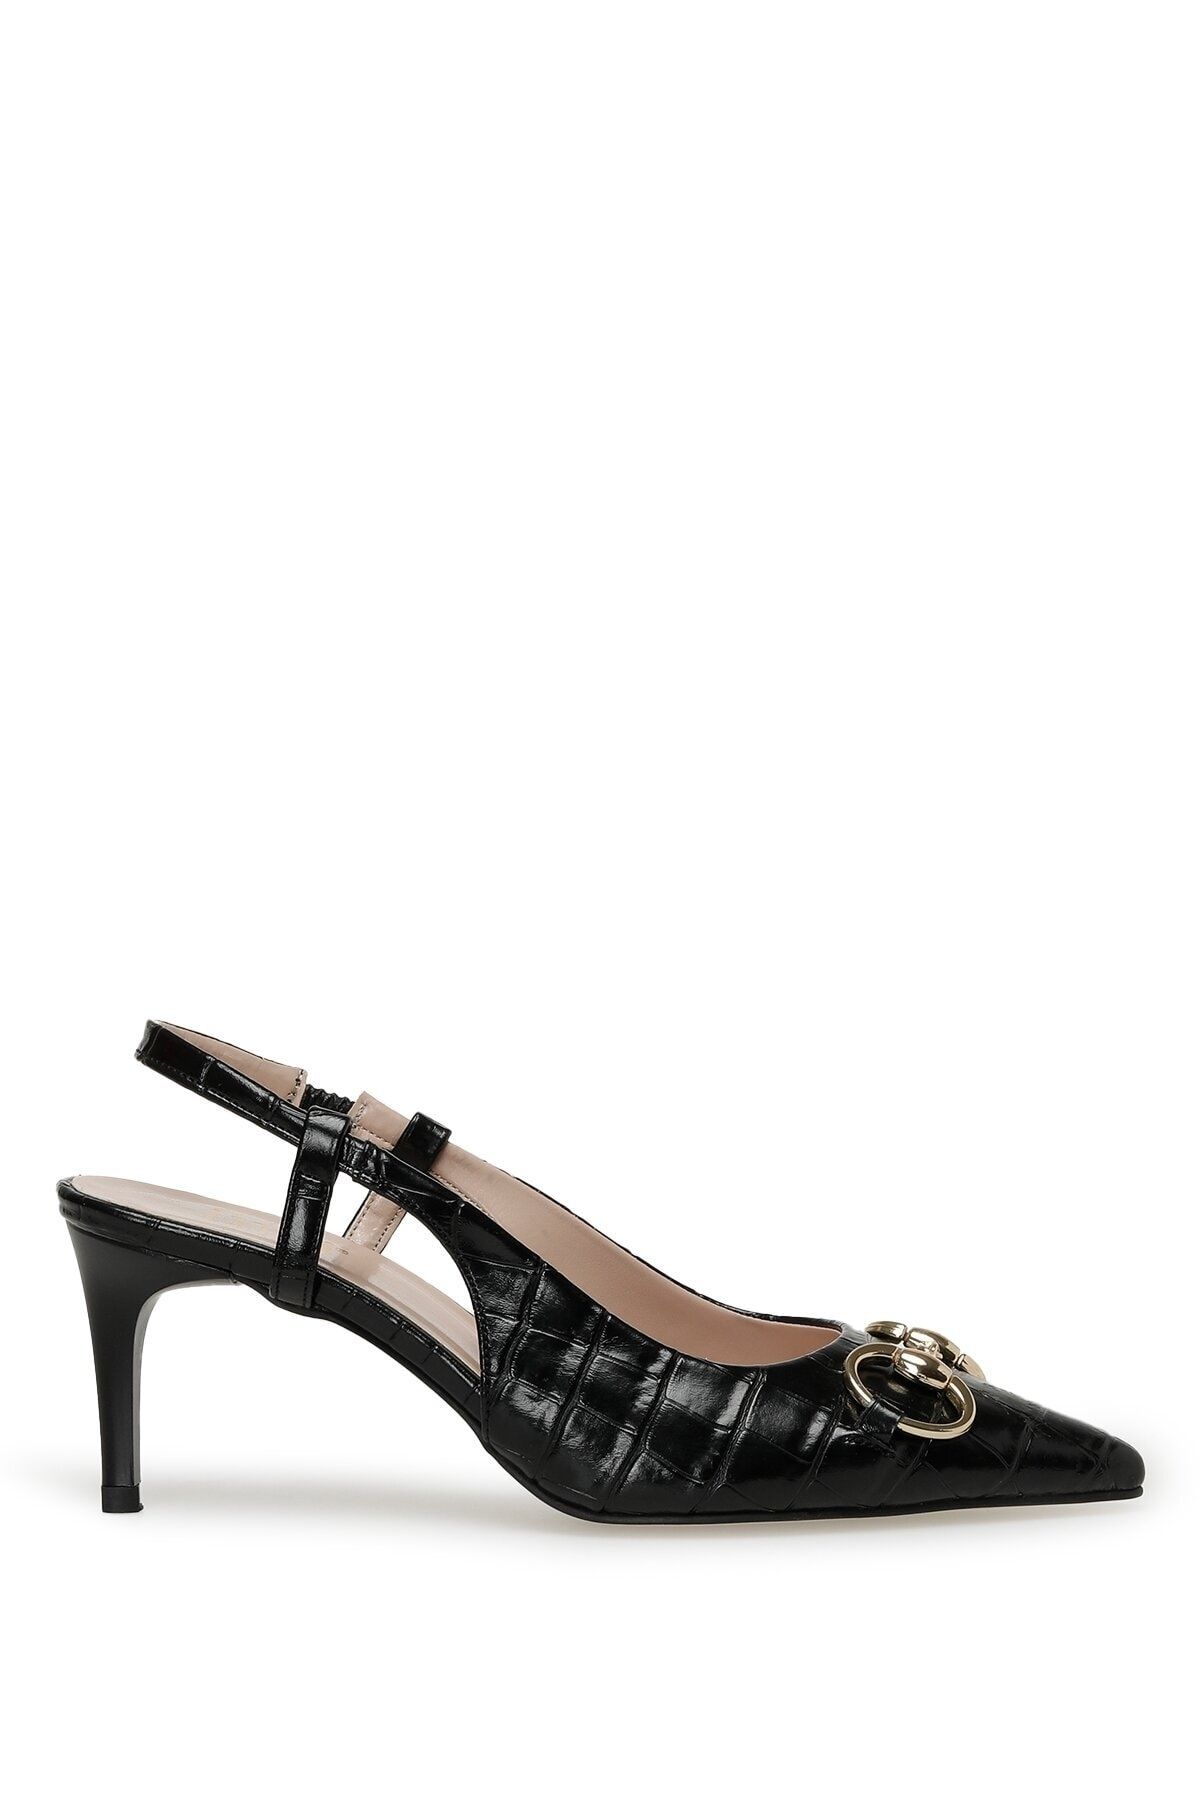 İnci Ethel 3fx Siyah Kadın Topuklu Ayakkabı